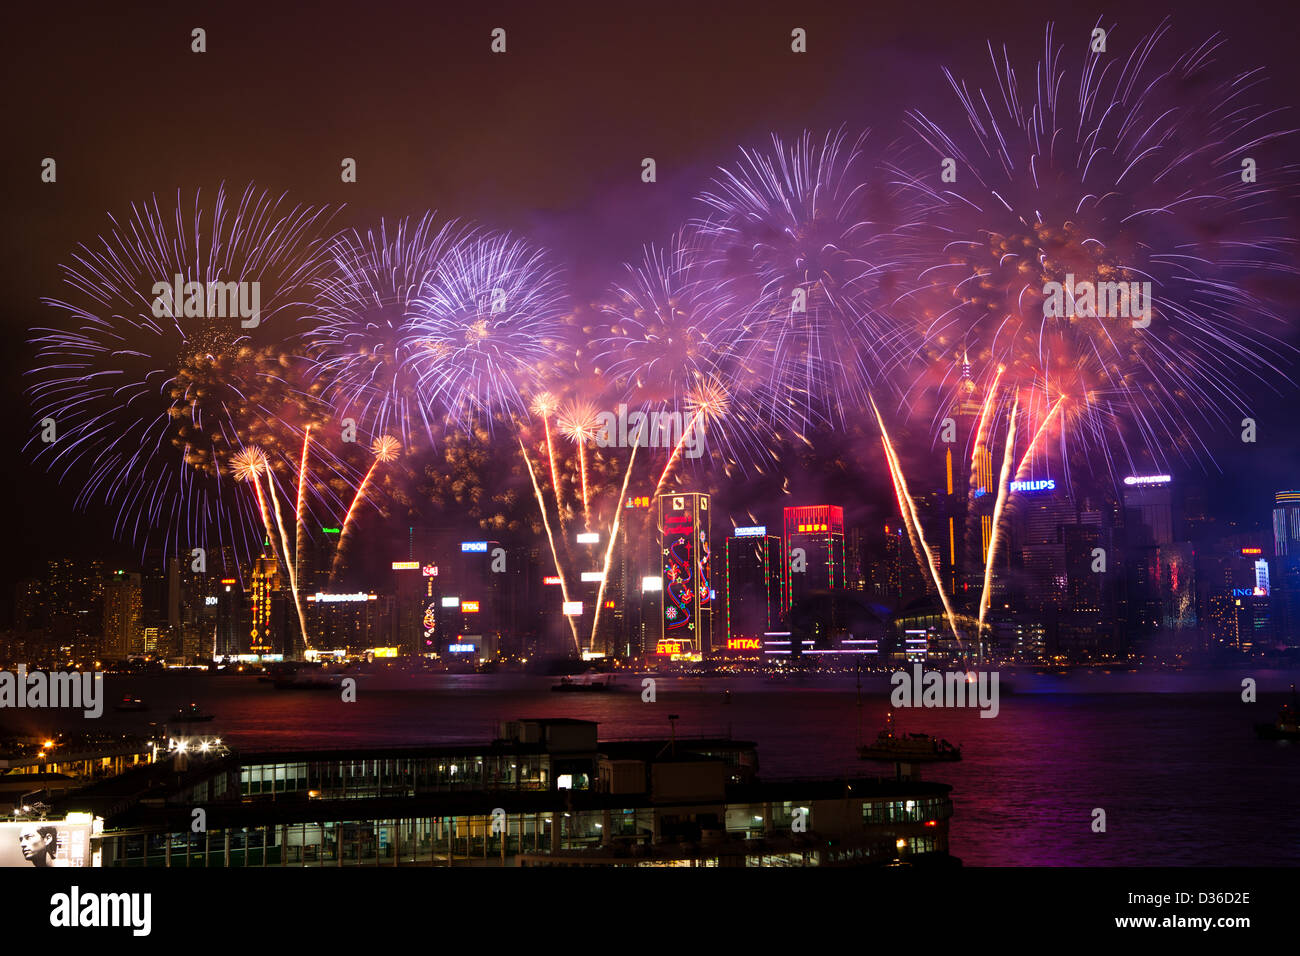 D'artifice pour la célébration de la nouvelle année lunaire dans le port de Victoria de Hong Kong. Banque D'Images